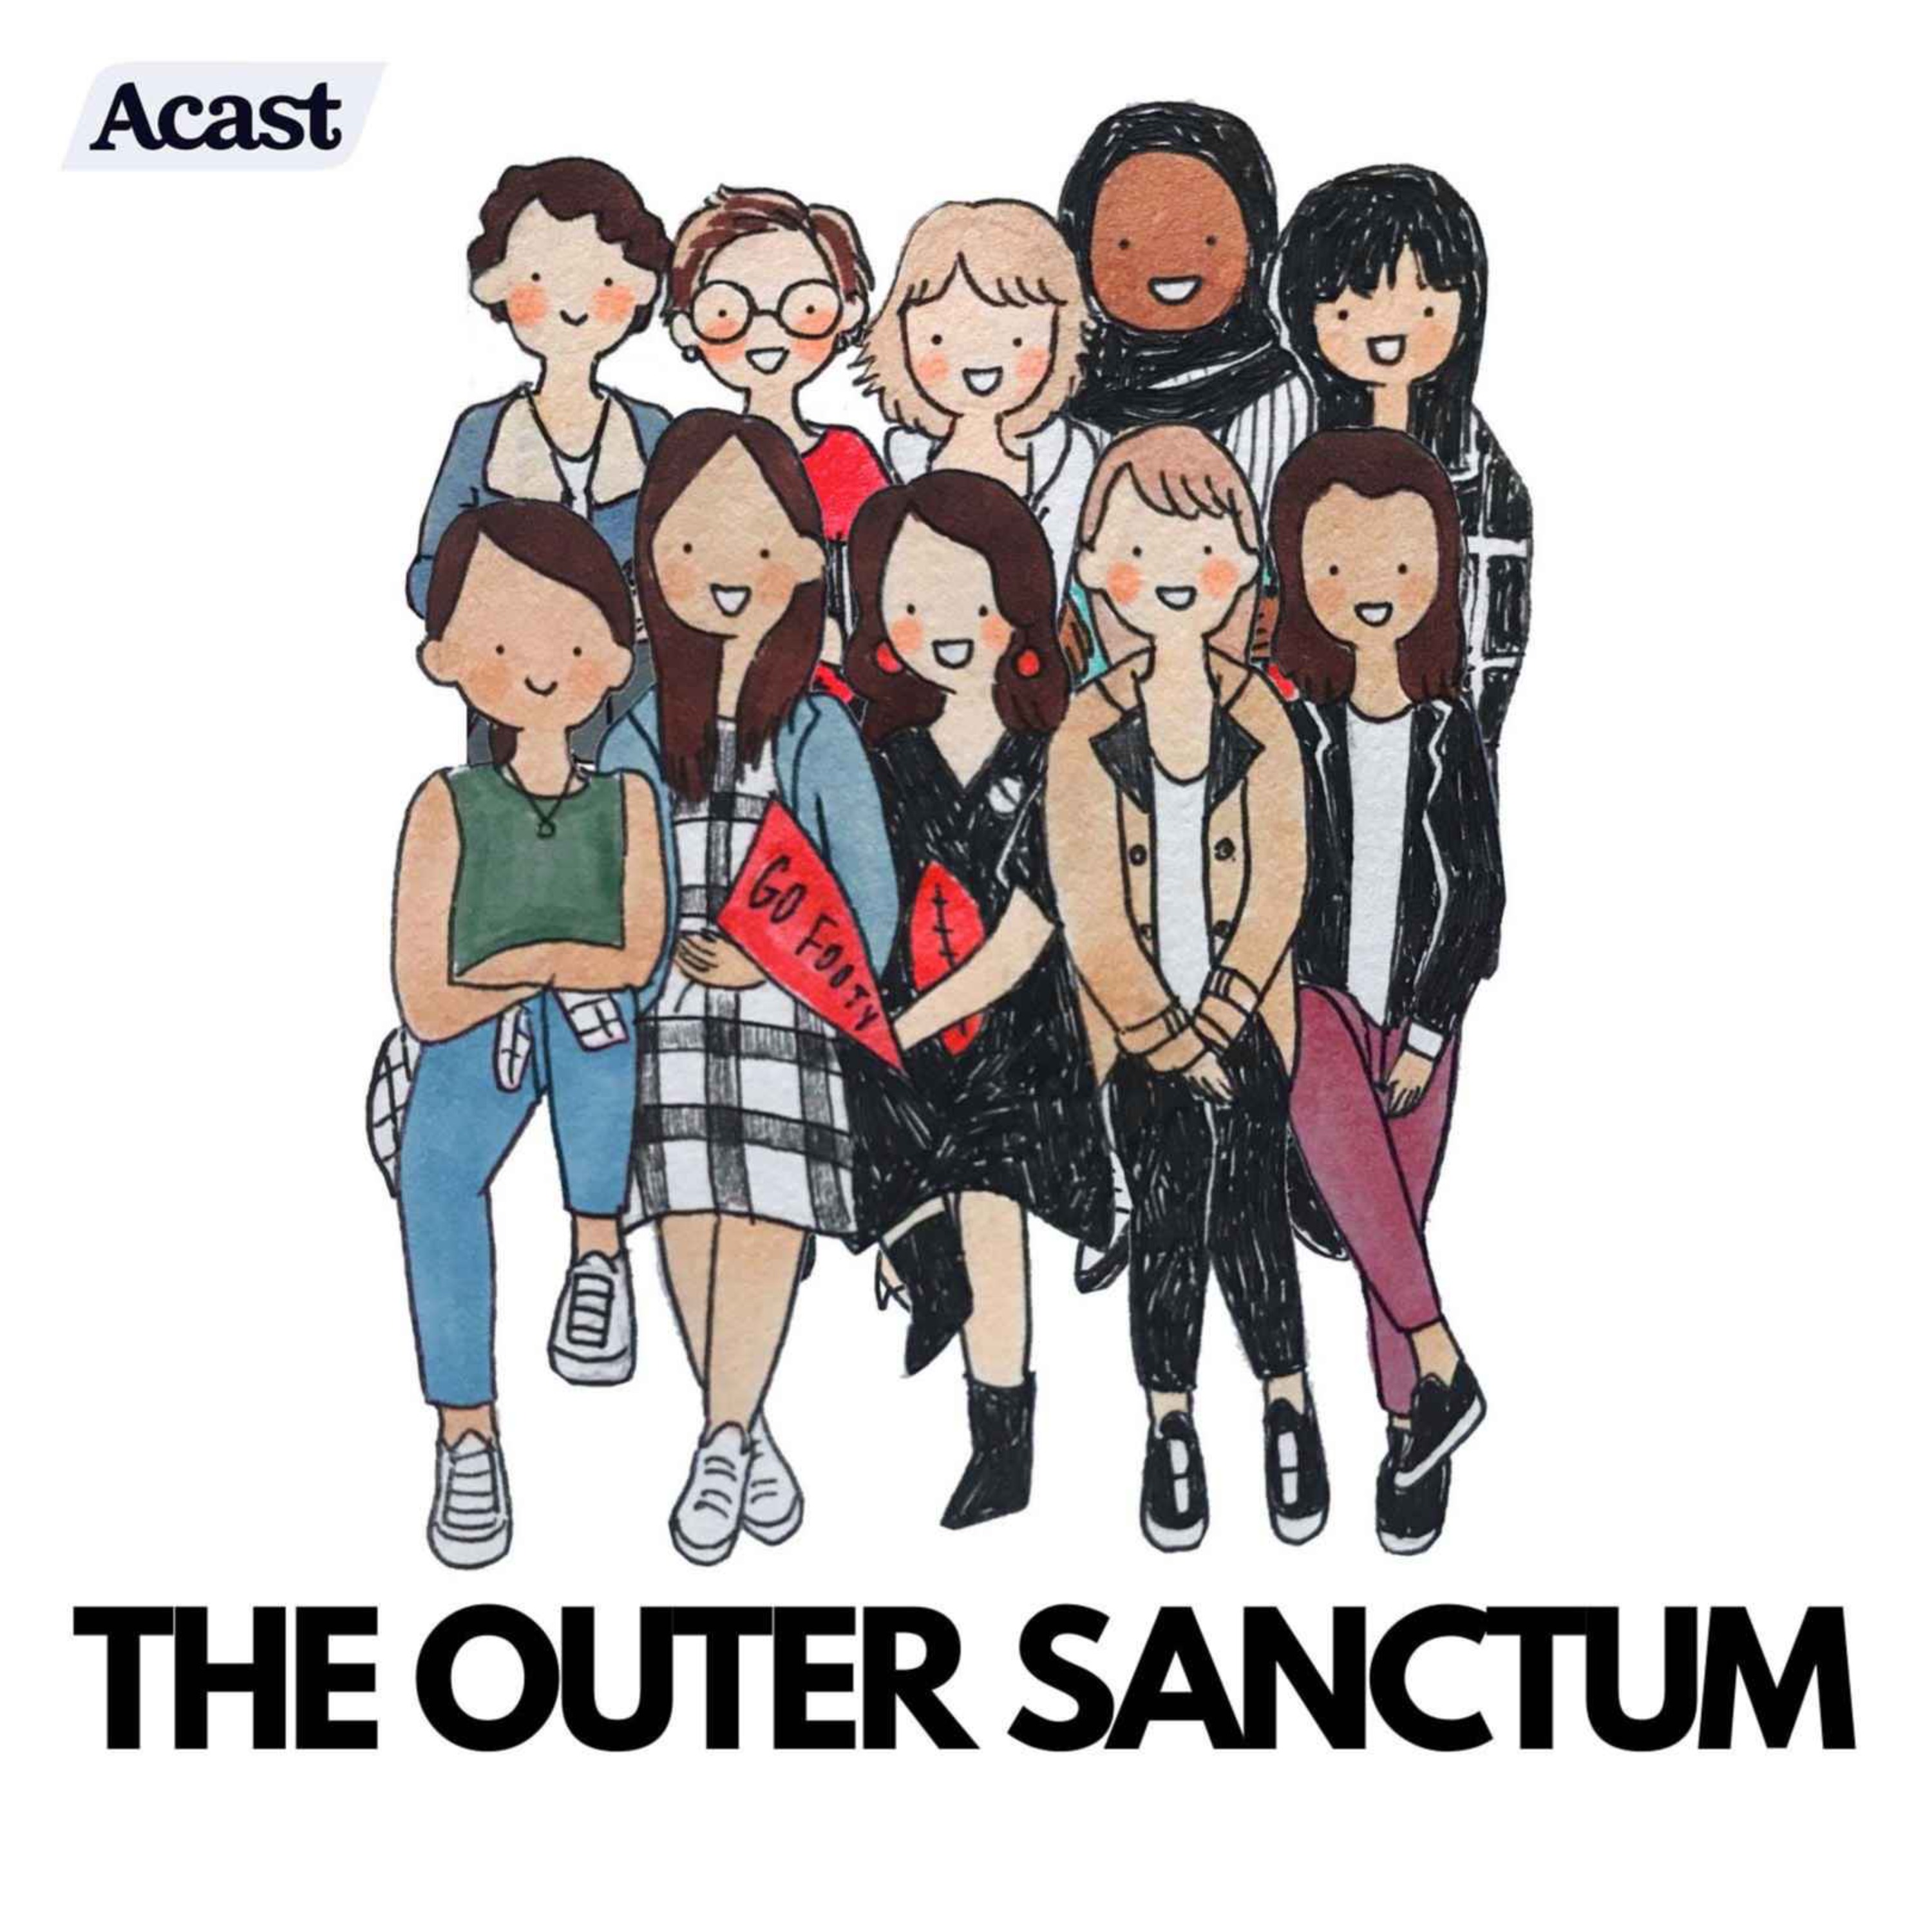 The Outer Sanctum